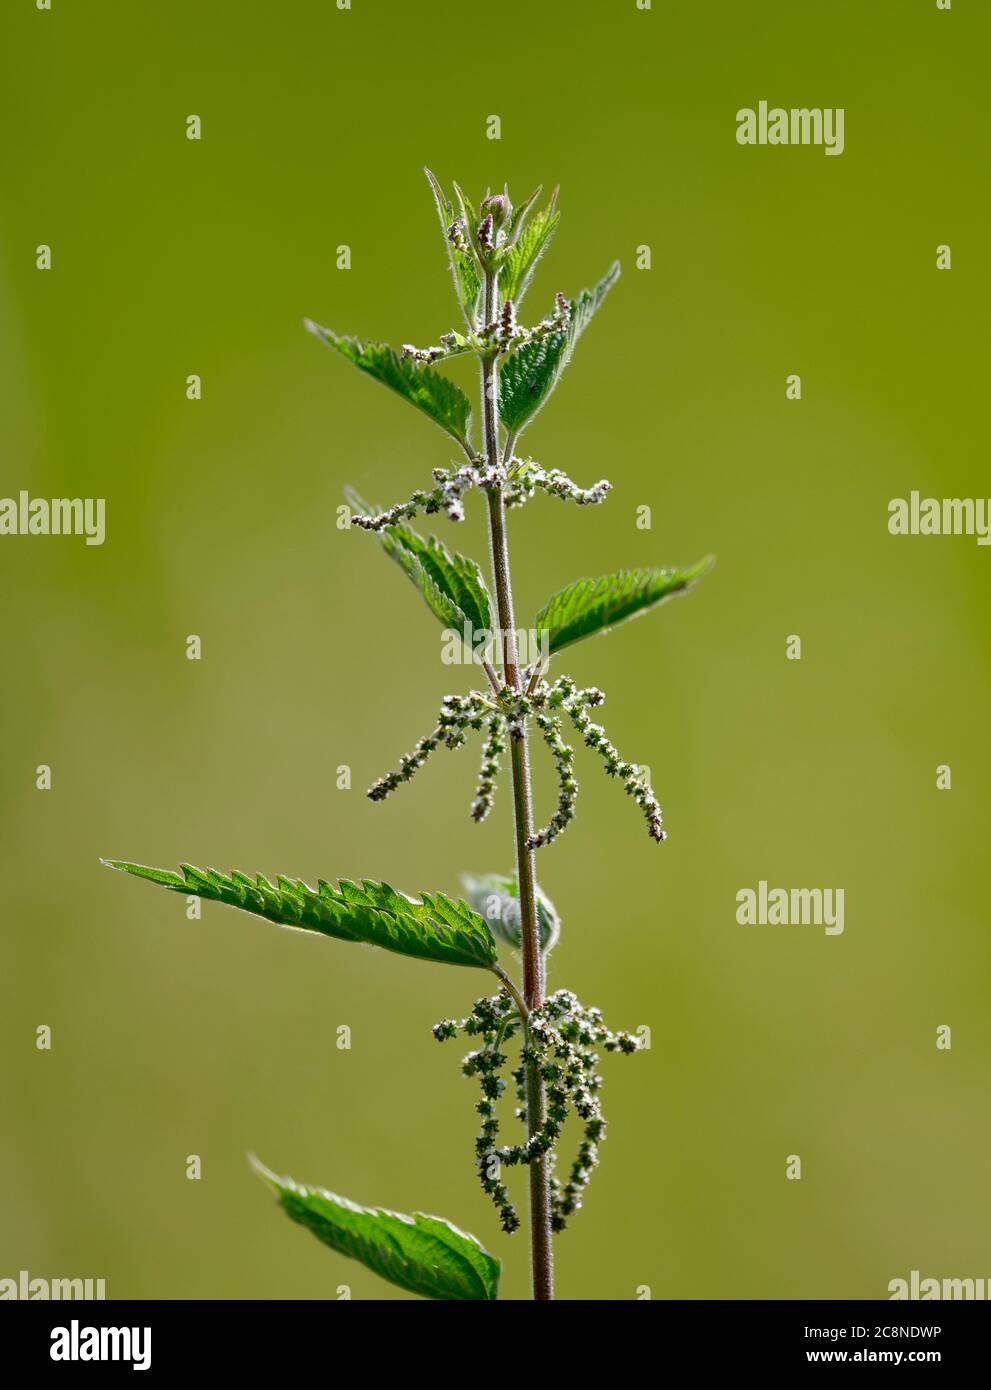 Ortica comune (Urtica dioica) anche noto come ortica stinging fotografato su uno sfondo verde chiaro Foto Stock